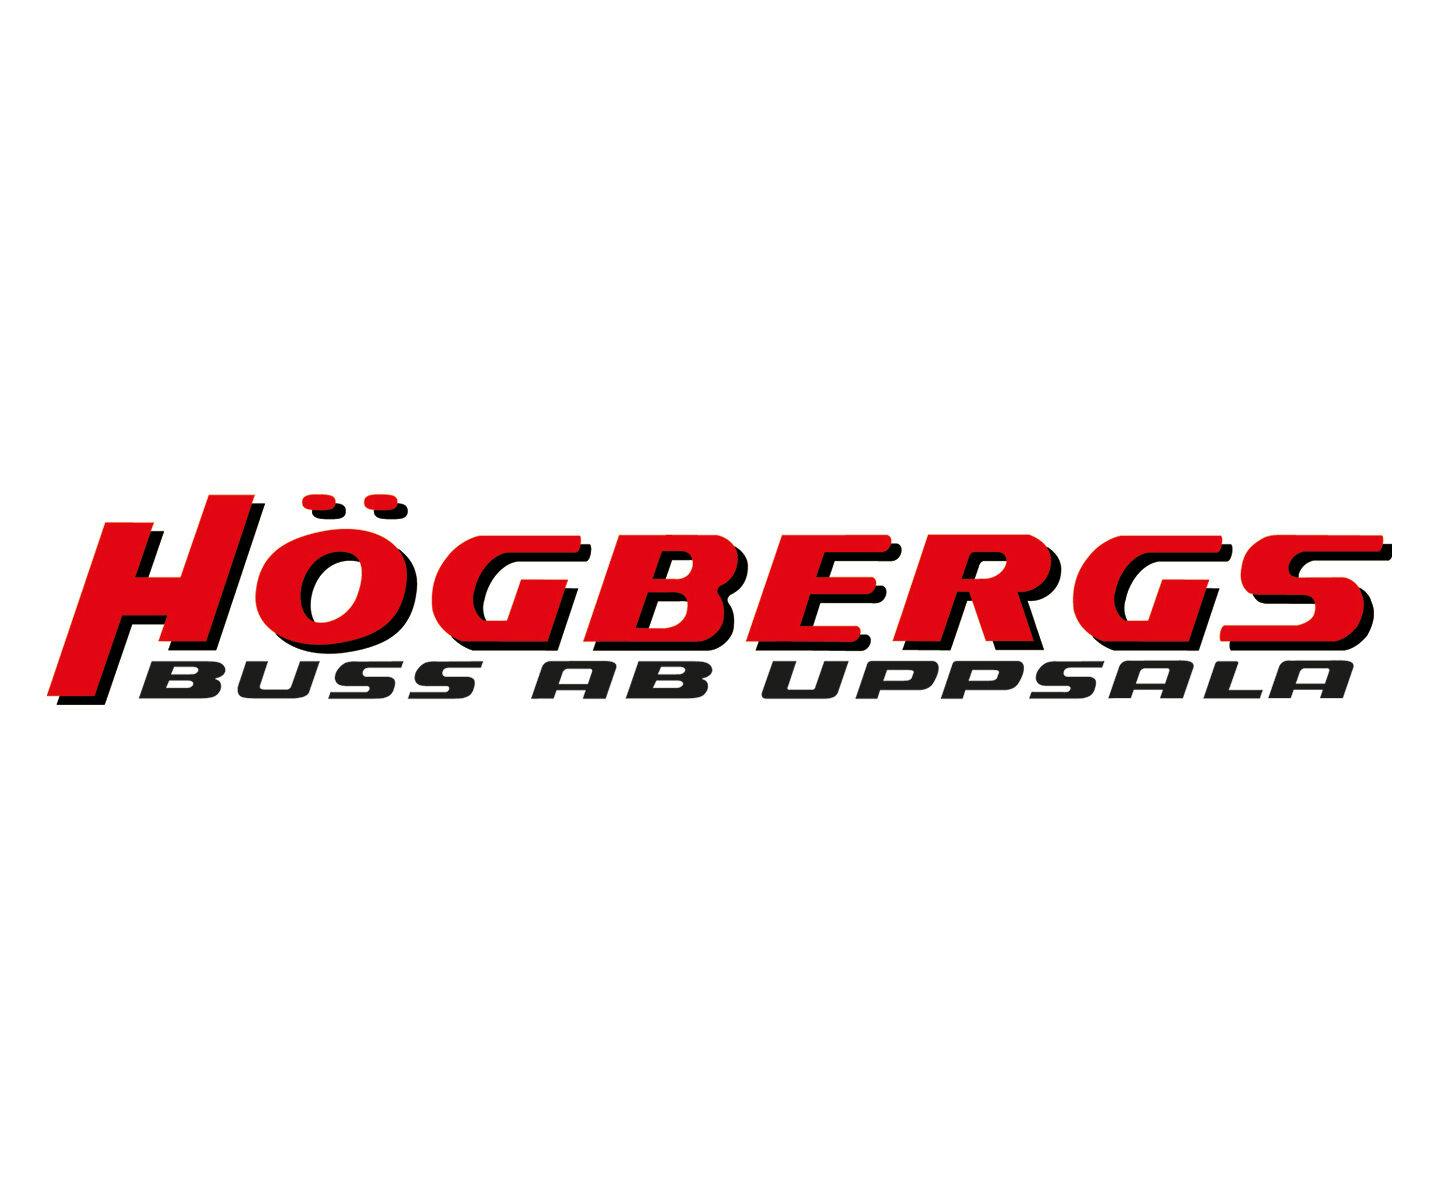 Högbergs bussresor logga